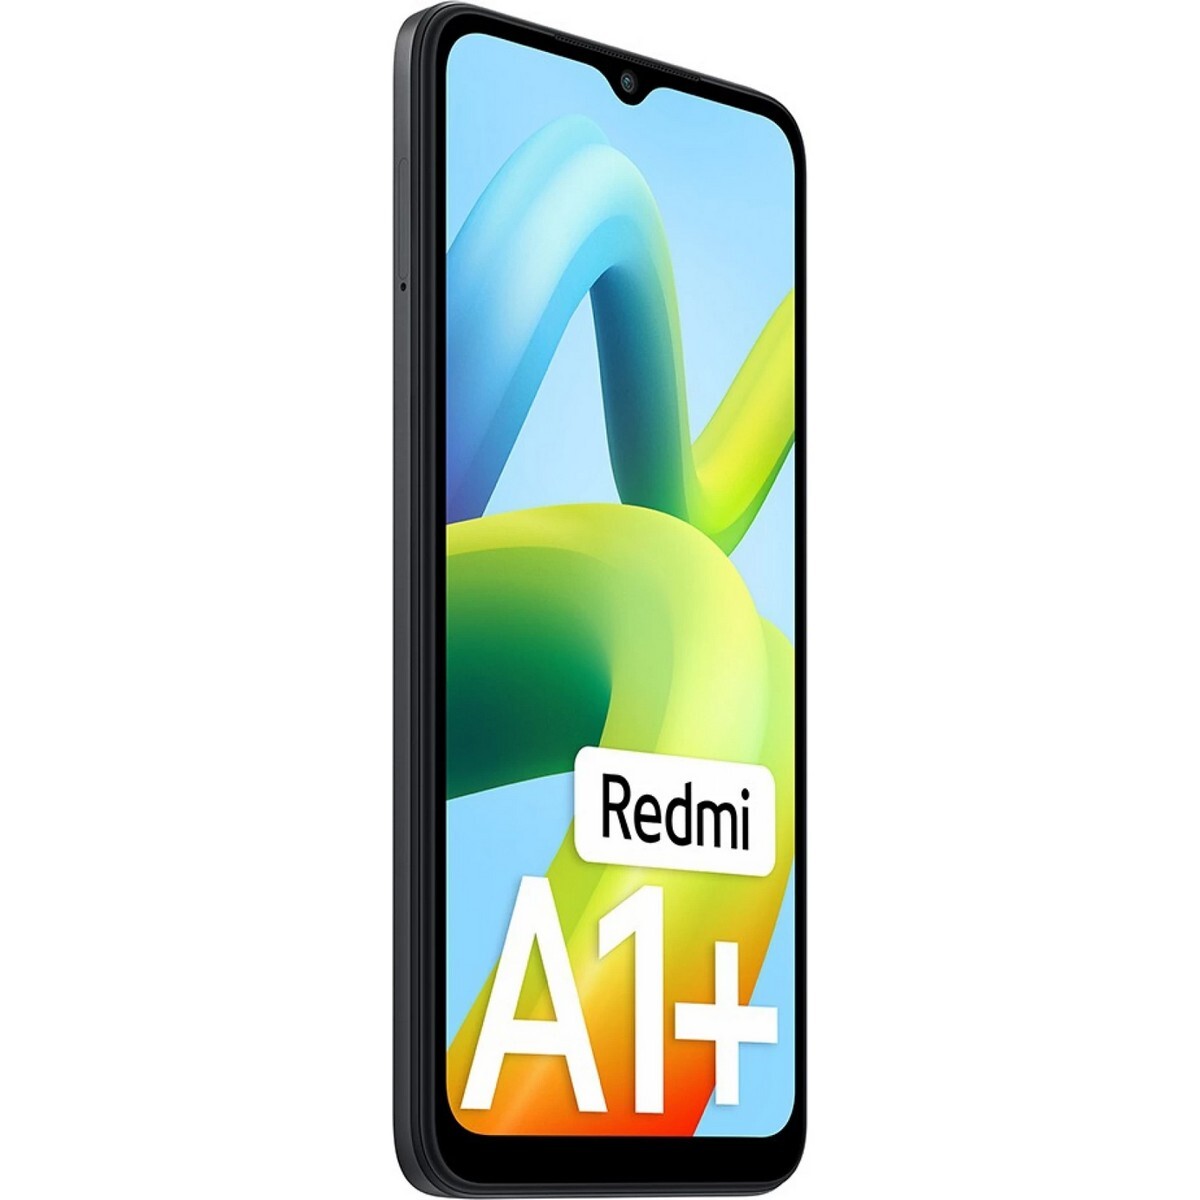 Redmi A1+ 3GB/32GB Black